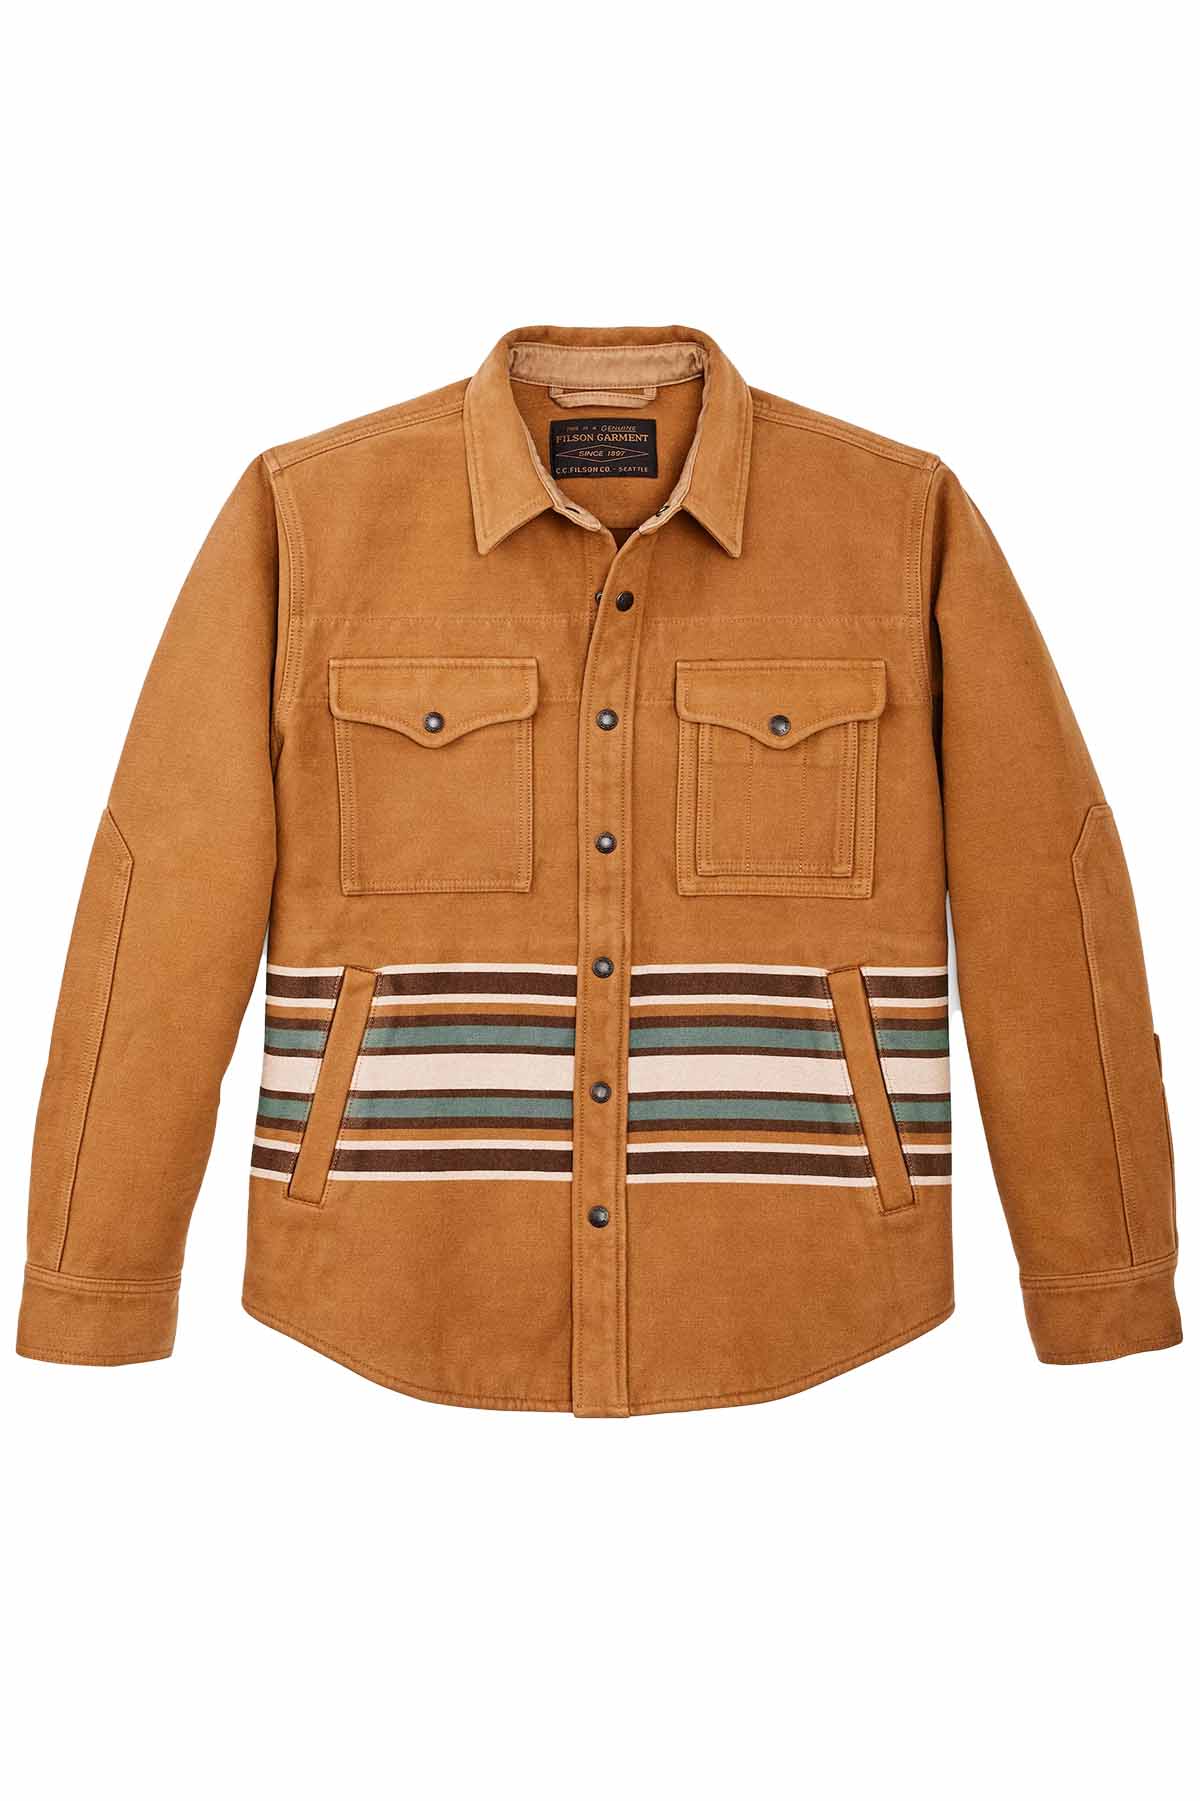 Filson - Beartooth Jac-Shirt - Golden Brown Multi Stripe - Front